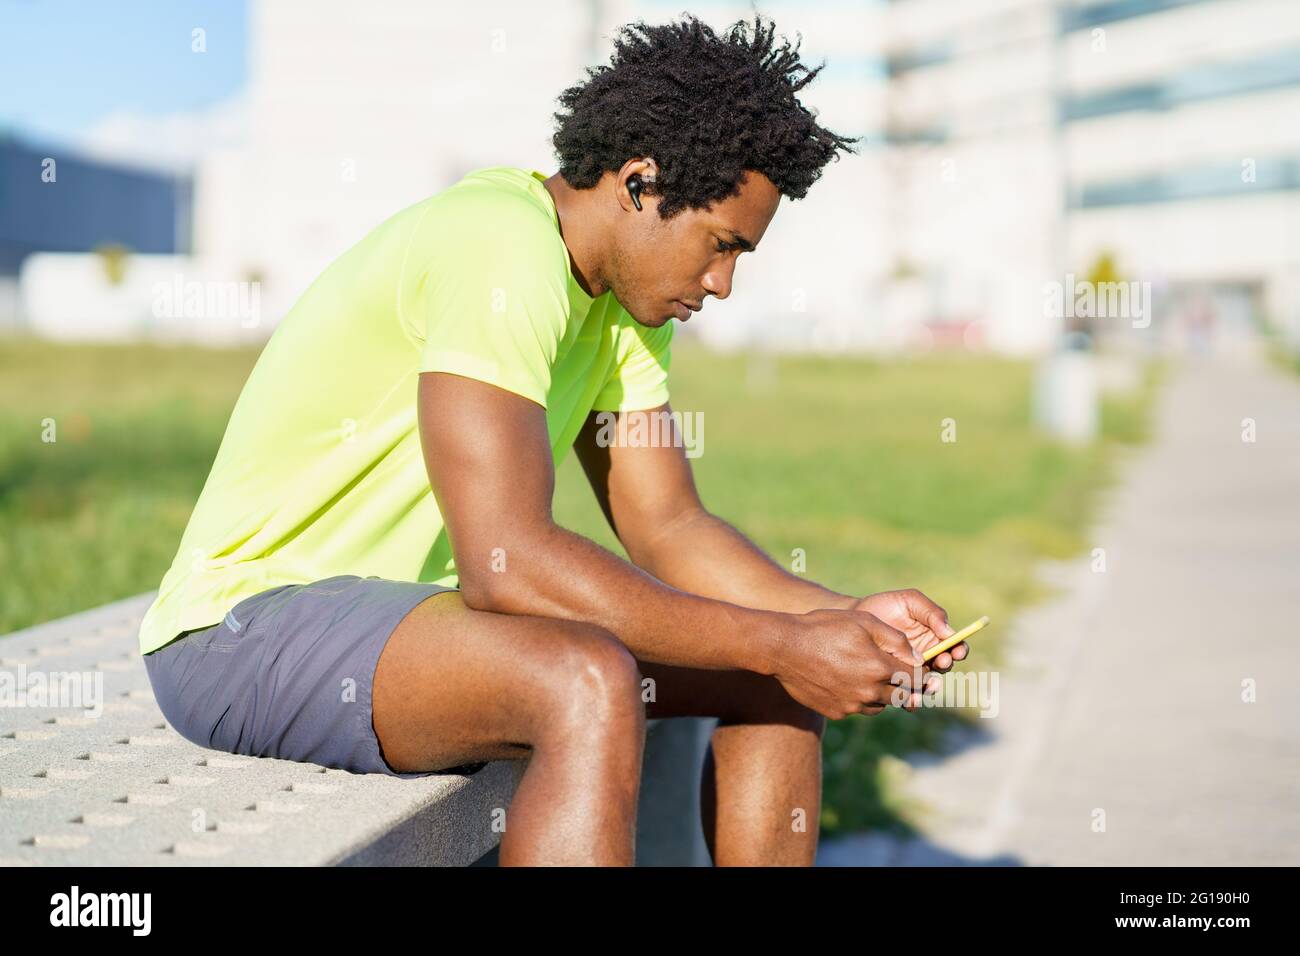 Hombre negro consultando su smartphone con alguna aplicación de ejercicio mientras descansa de su entrenamiento. Foto de stock